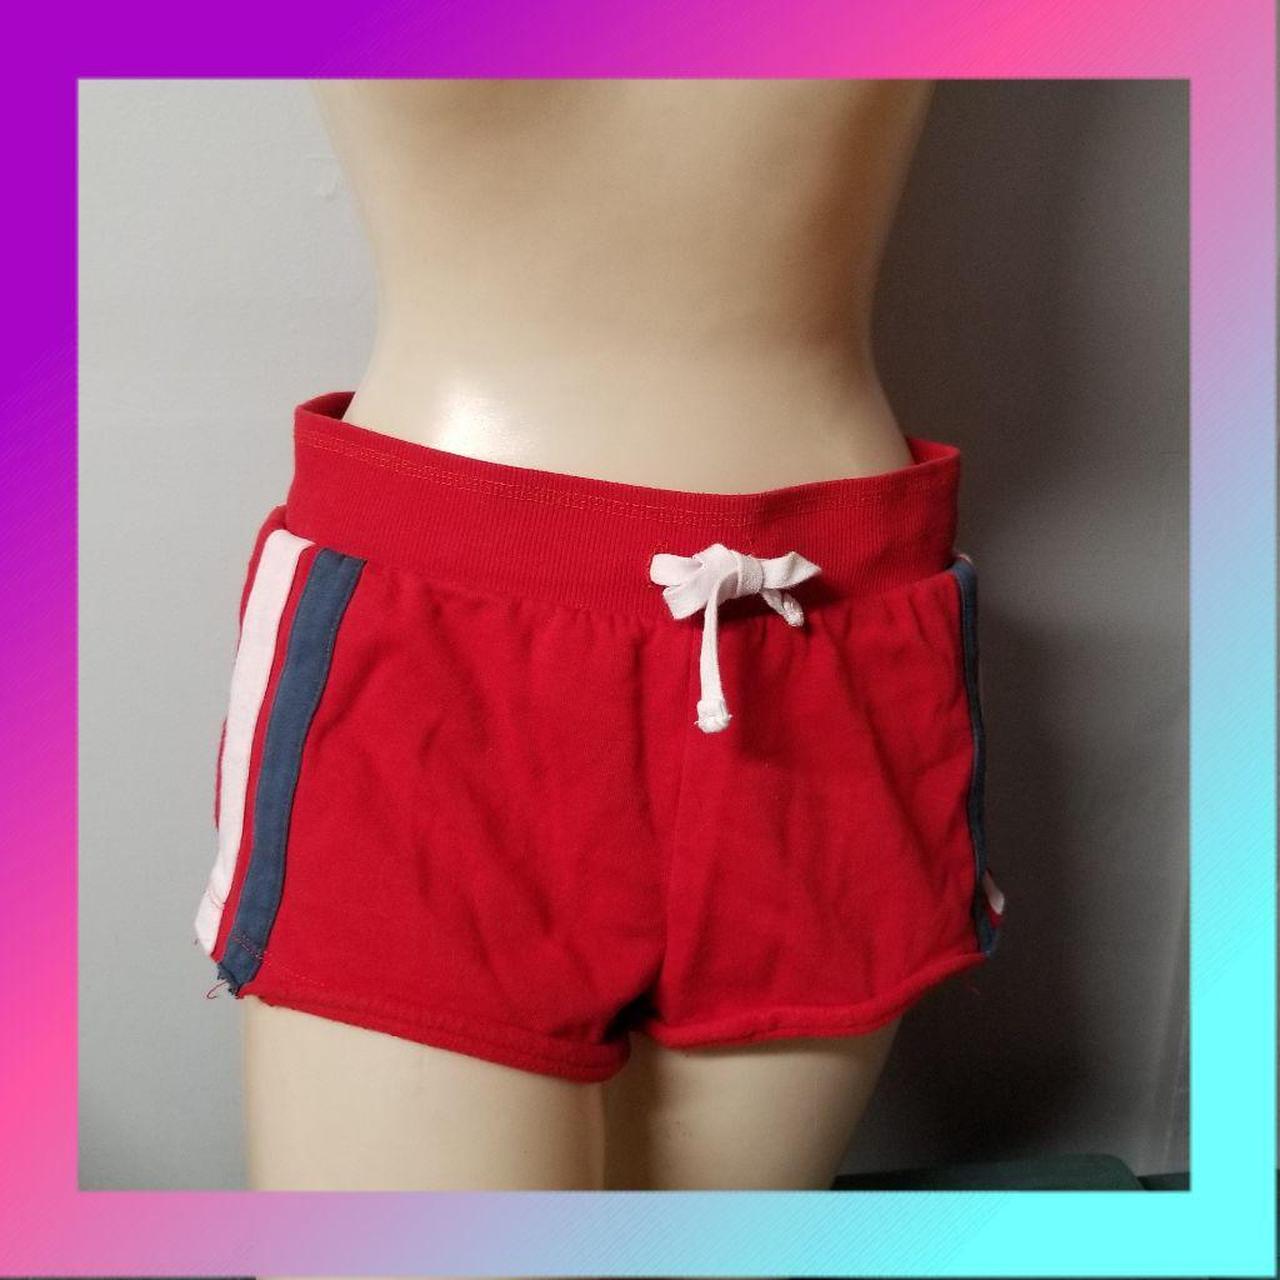 Product Image 1 - Stripe sweat shorts size medium